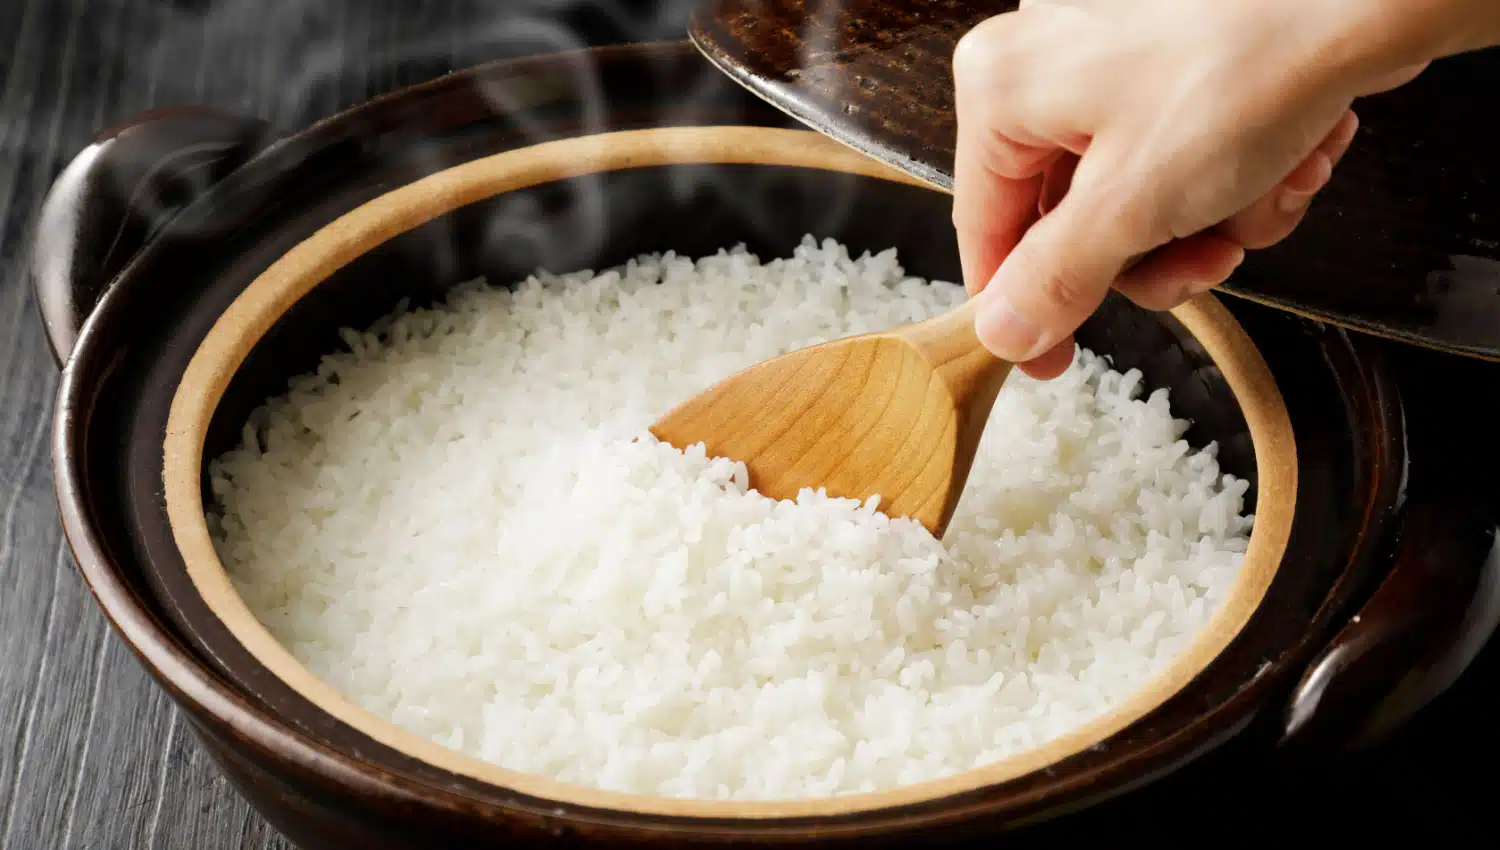  Formeln för perfekt ris: Vetenskapen förklarar kraften i kallt, kokande vatten